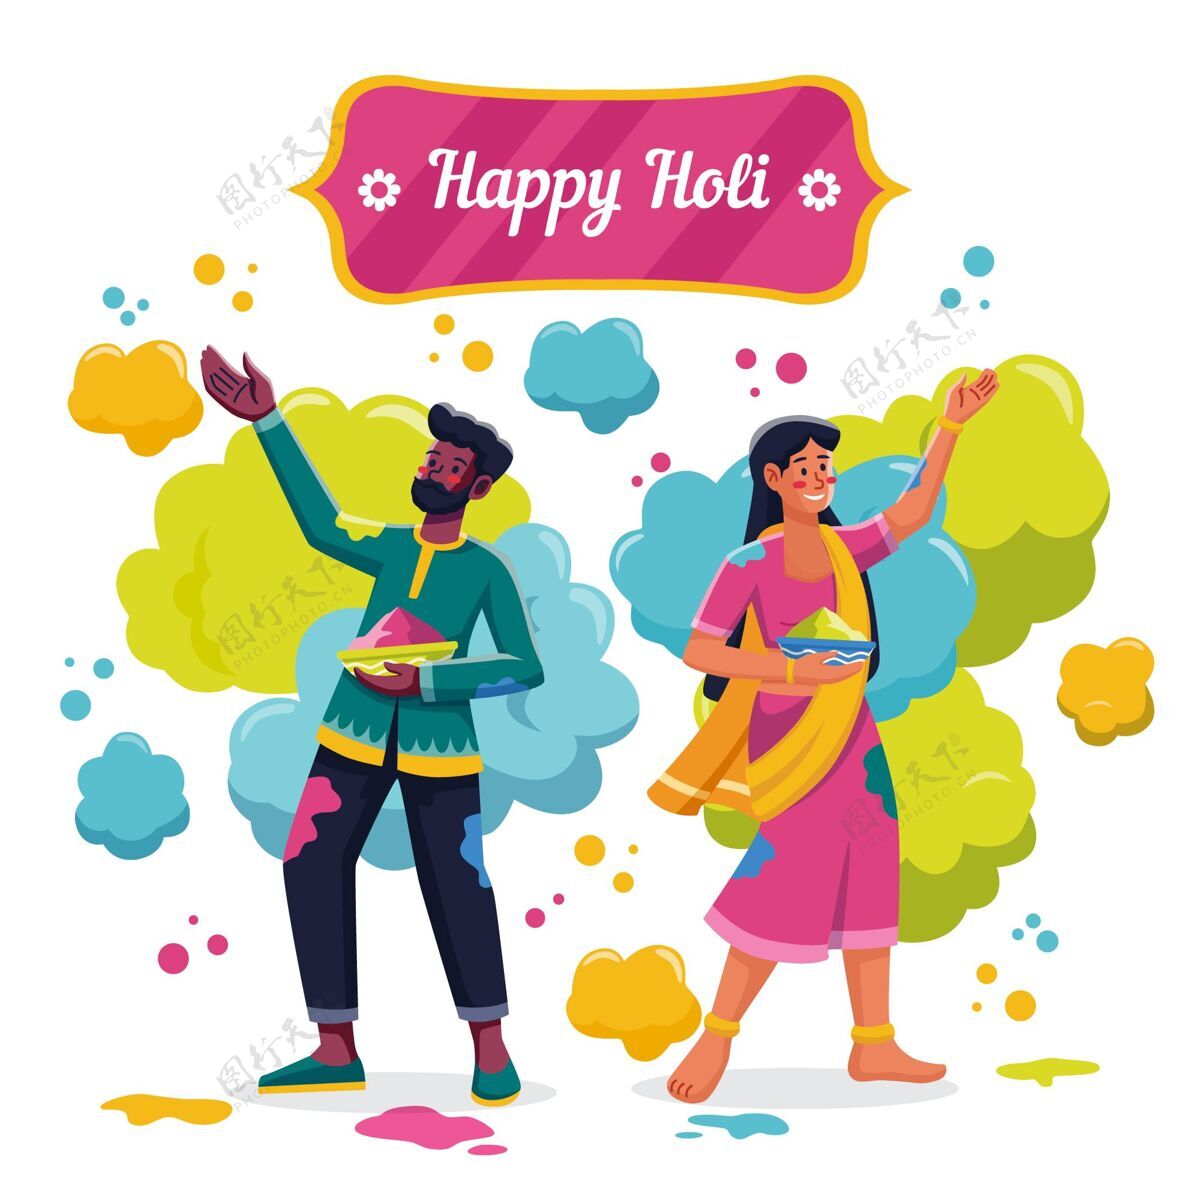 印度教平淡细致的人们庆祝胡里节插画印度教人春节